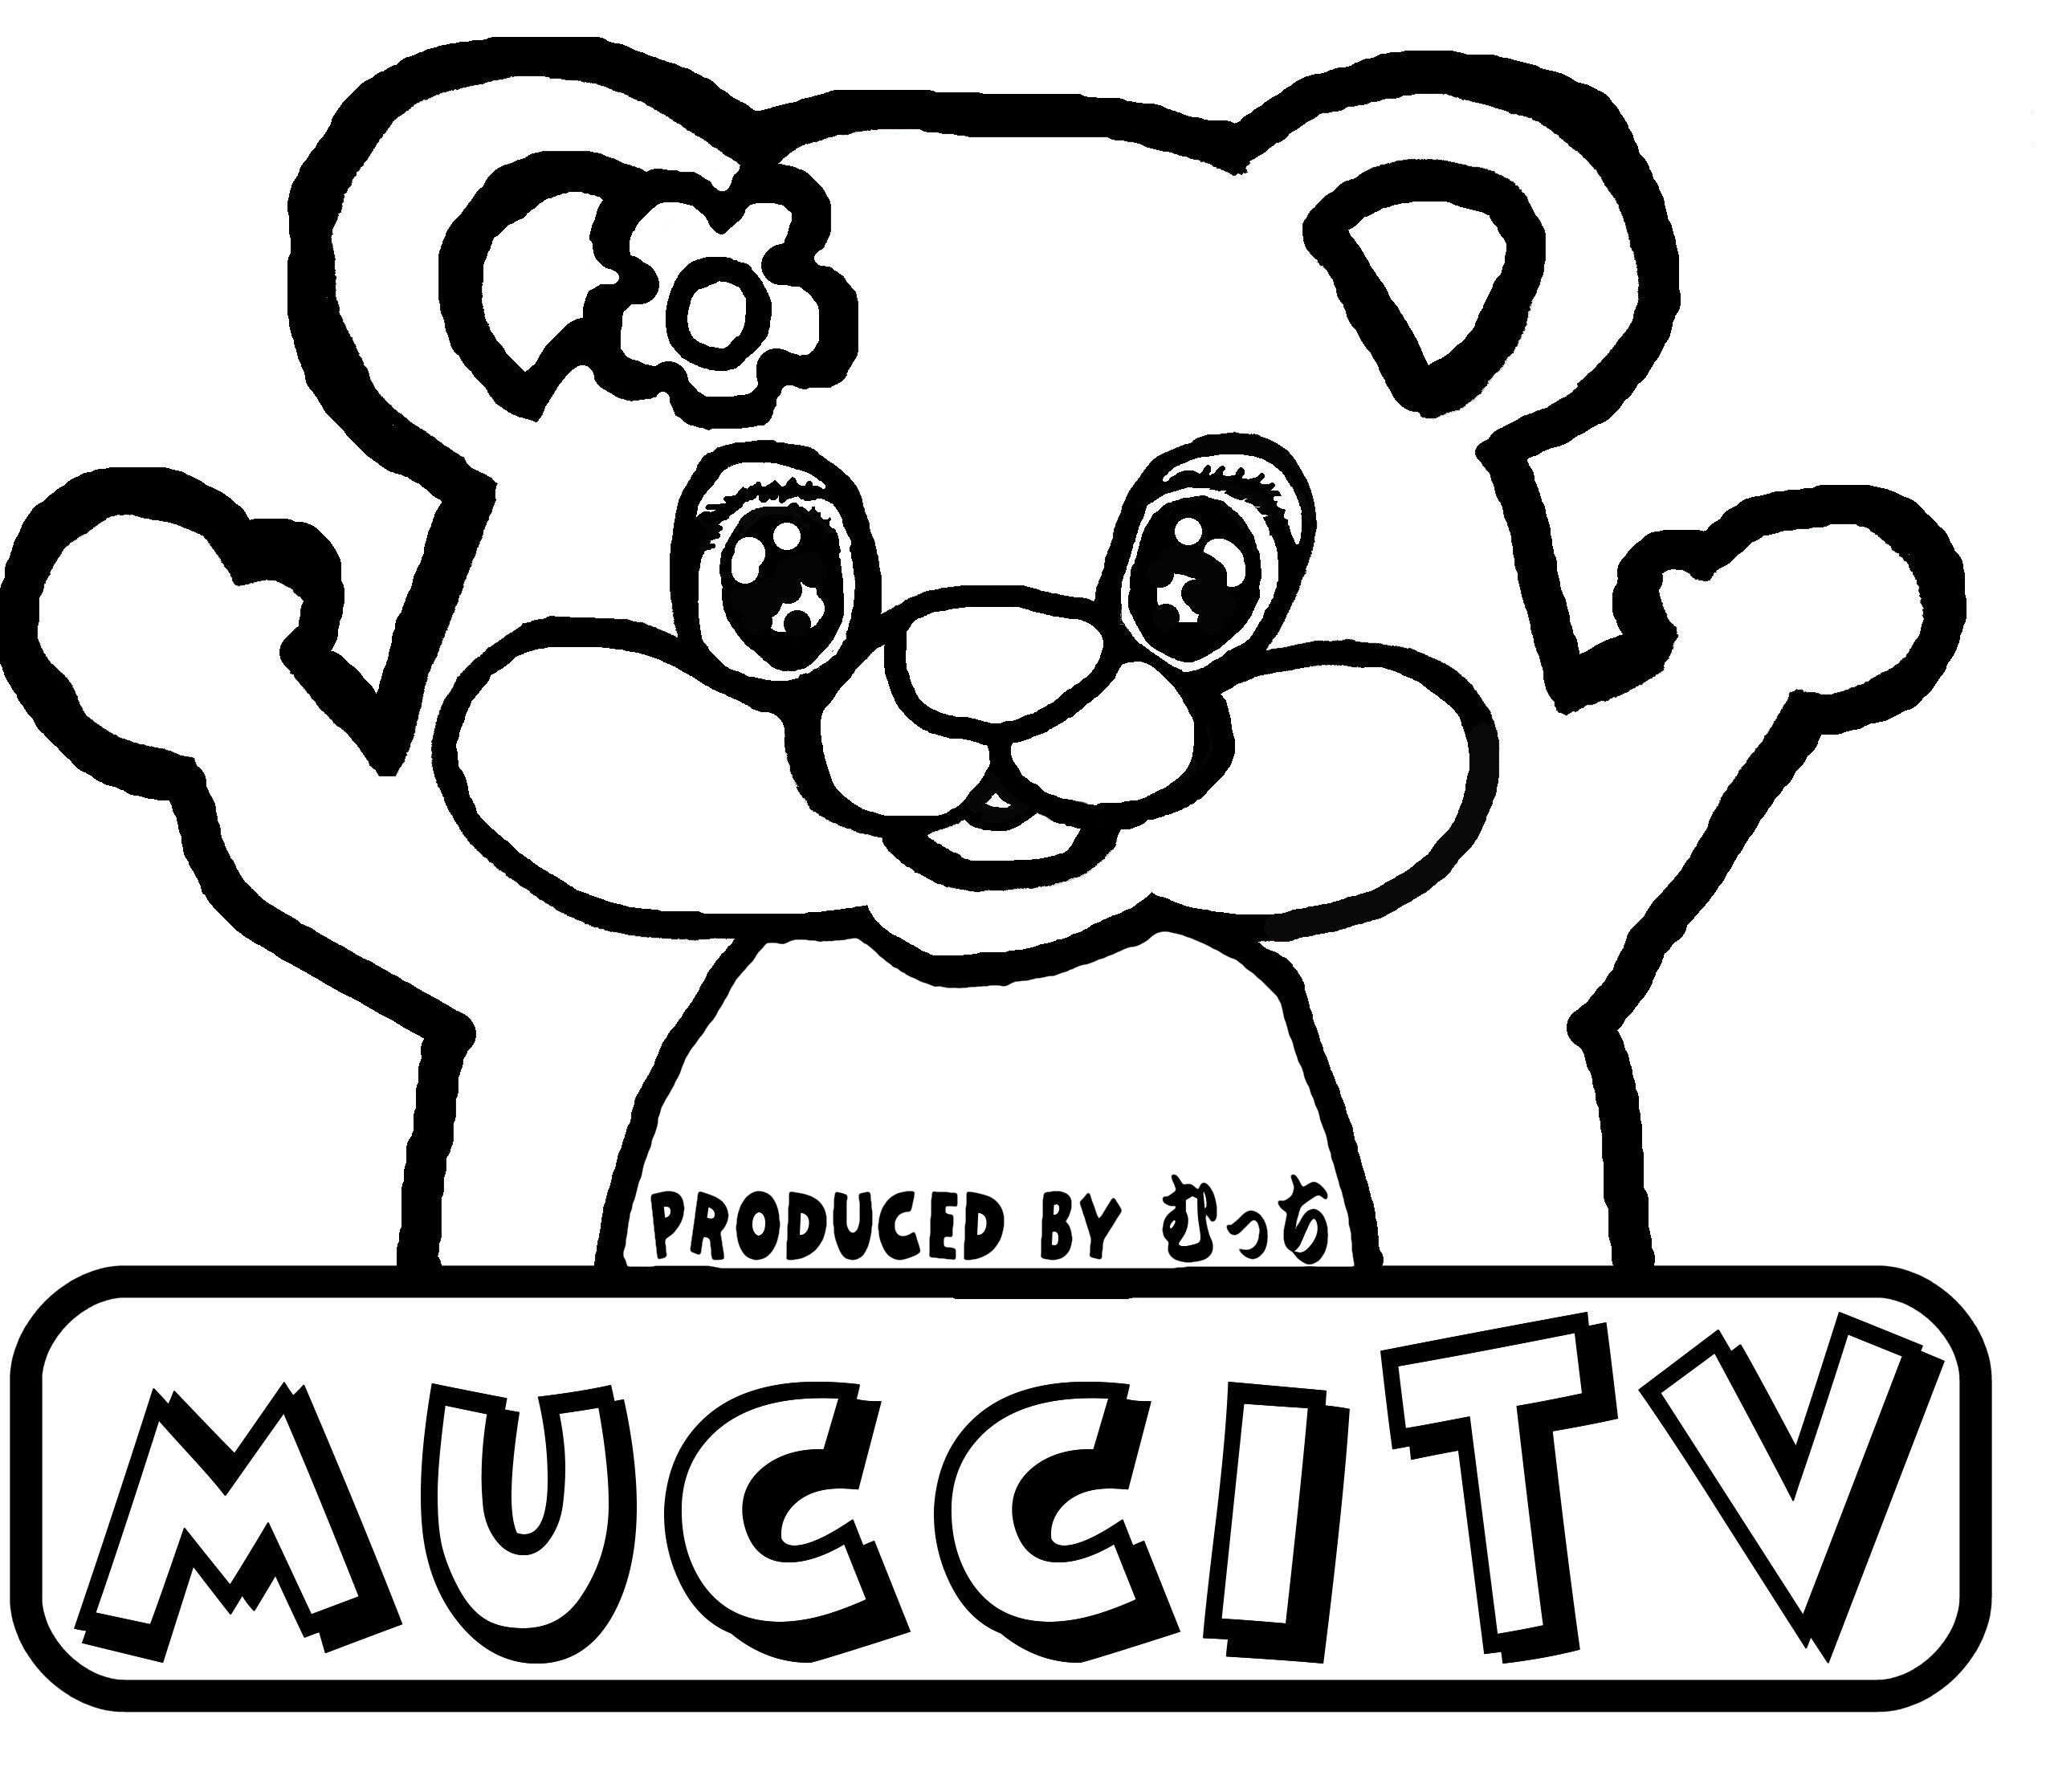 mucciTVデザインYouTubeチャンネルmucciTV内でmucciが着ているデザインと同じもの。 定番Ｔシャツ